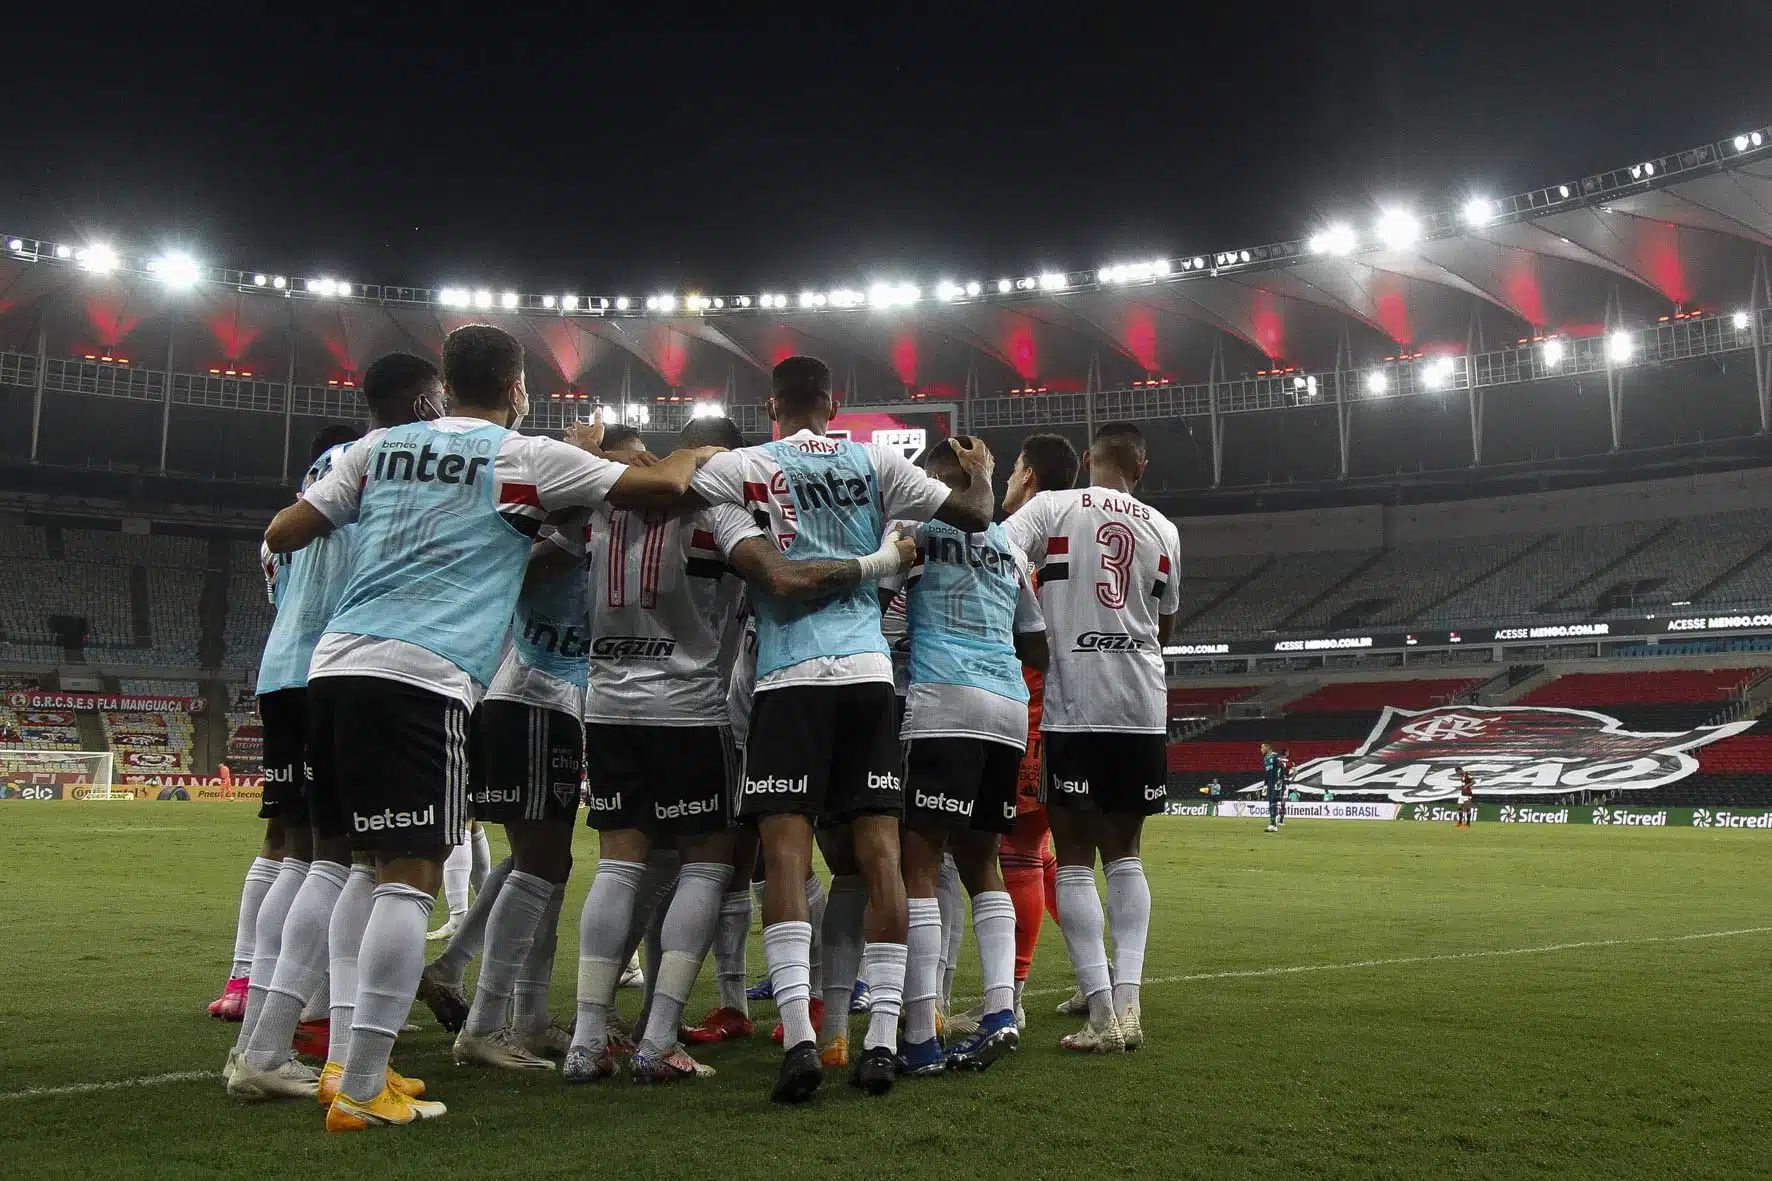 São Paulo e Flamengo se enfrentam no Morumbi pela Copa do Brasil